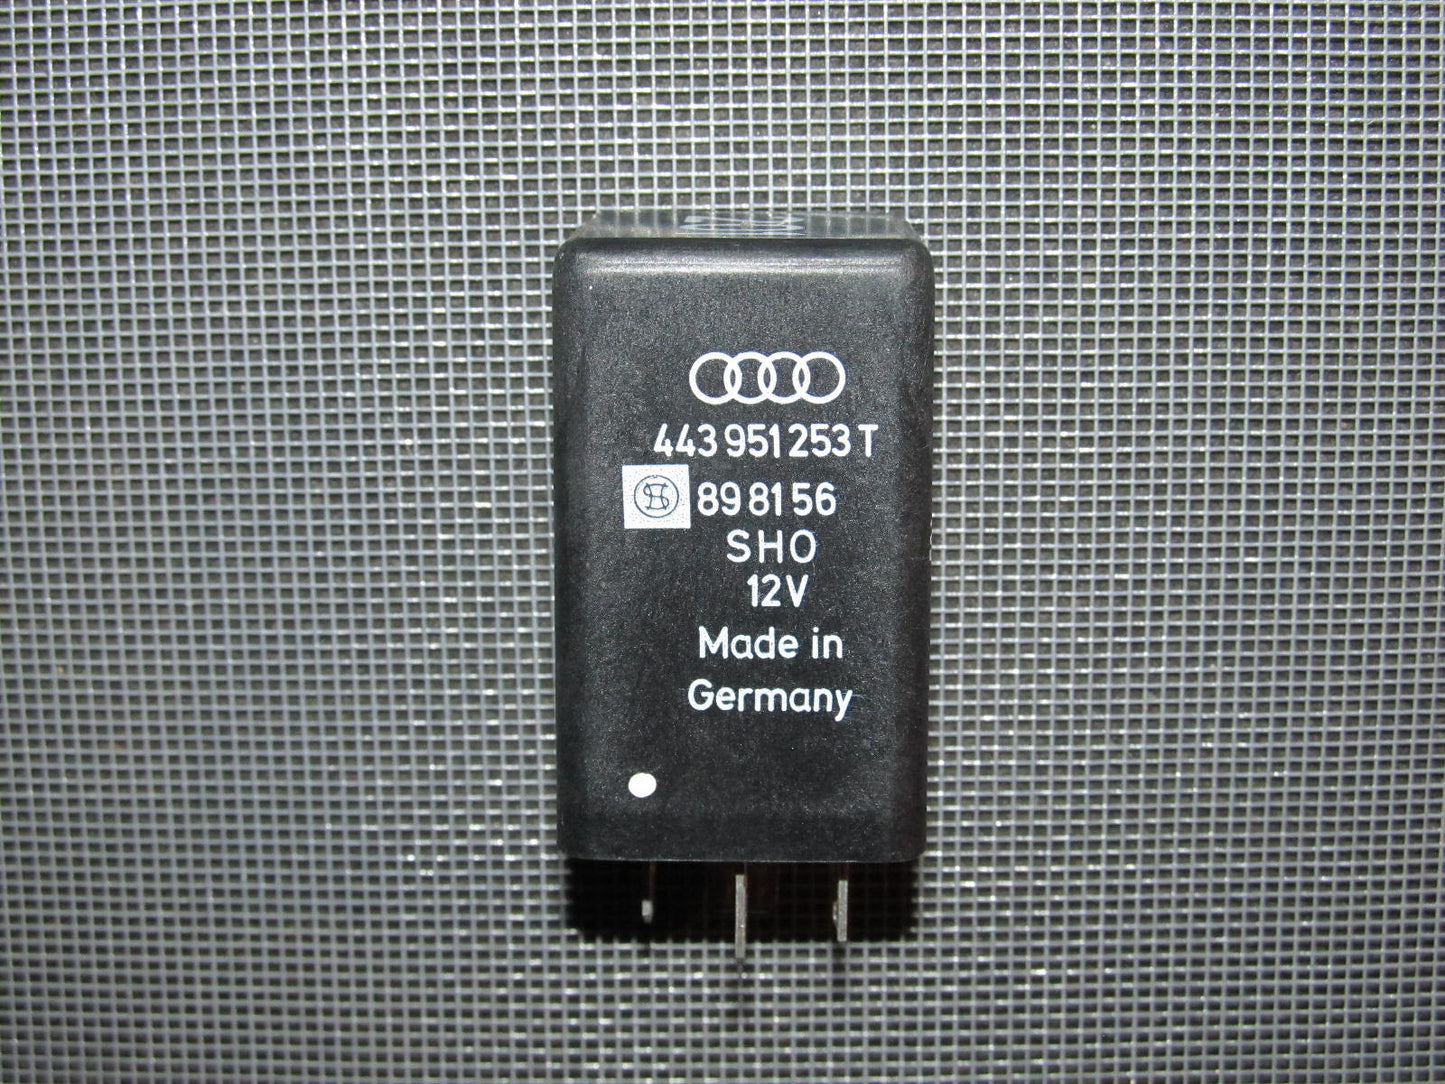 Audi & Volkswagen Universal Relay 443951253T